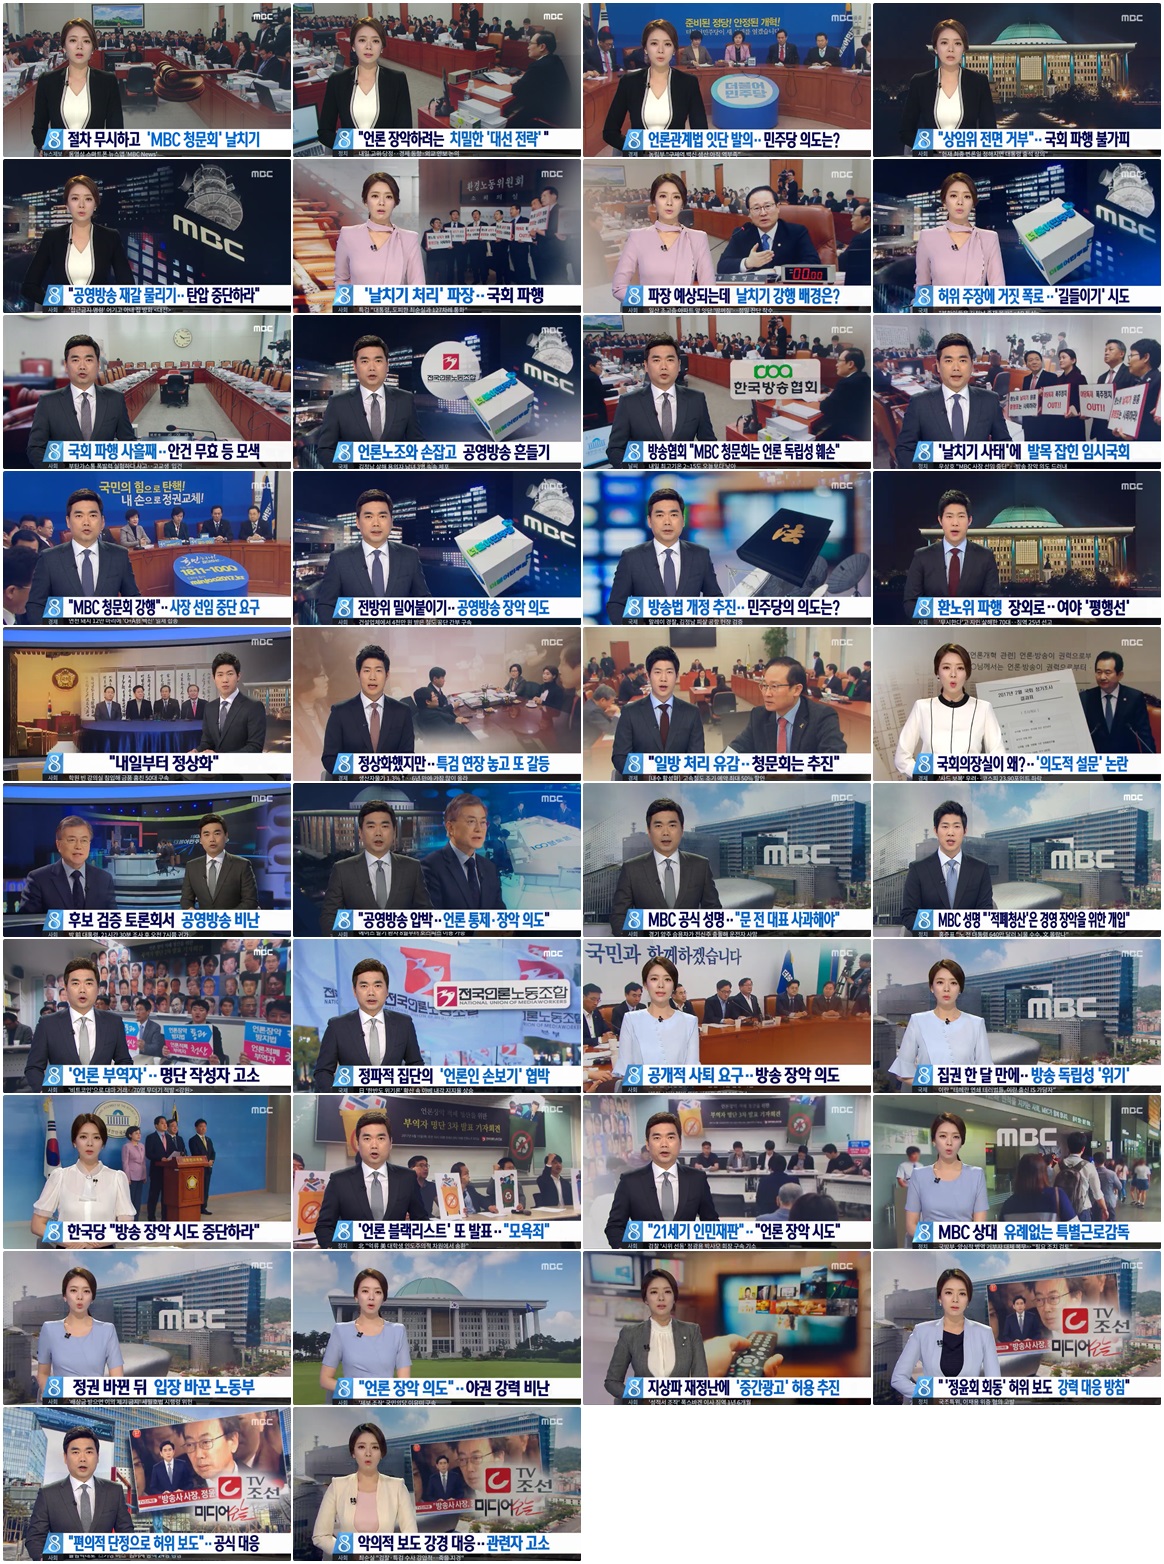 ▲ 2017년 상반기 보도된 MBC의 뉴스 사유화 소지가 있는 리포트.